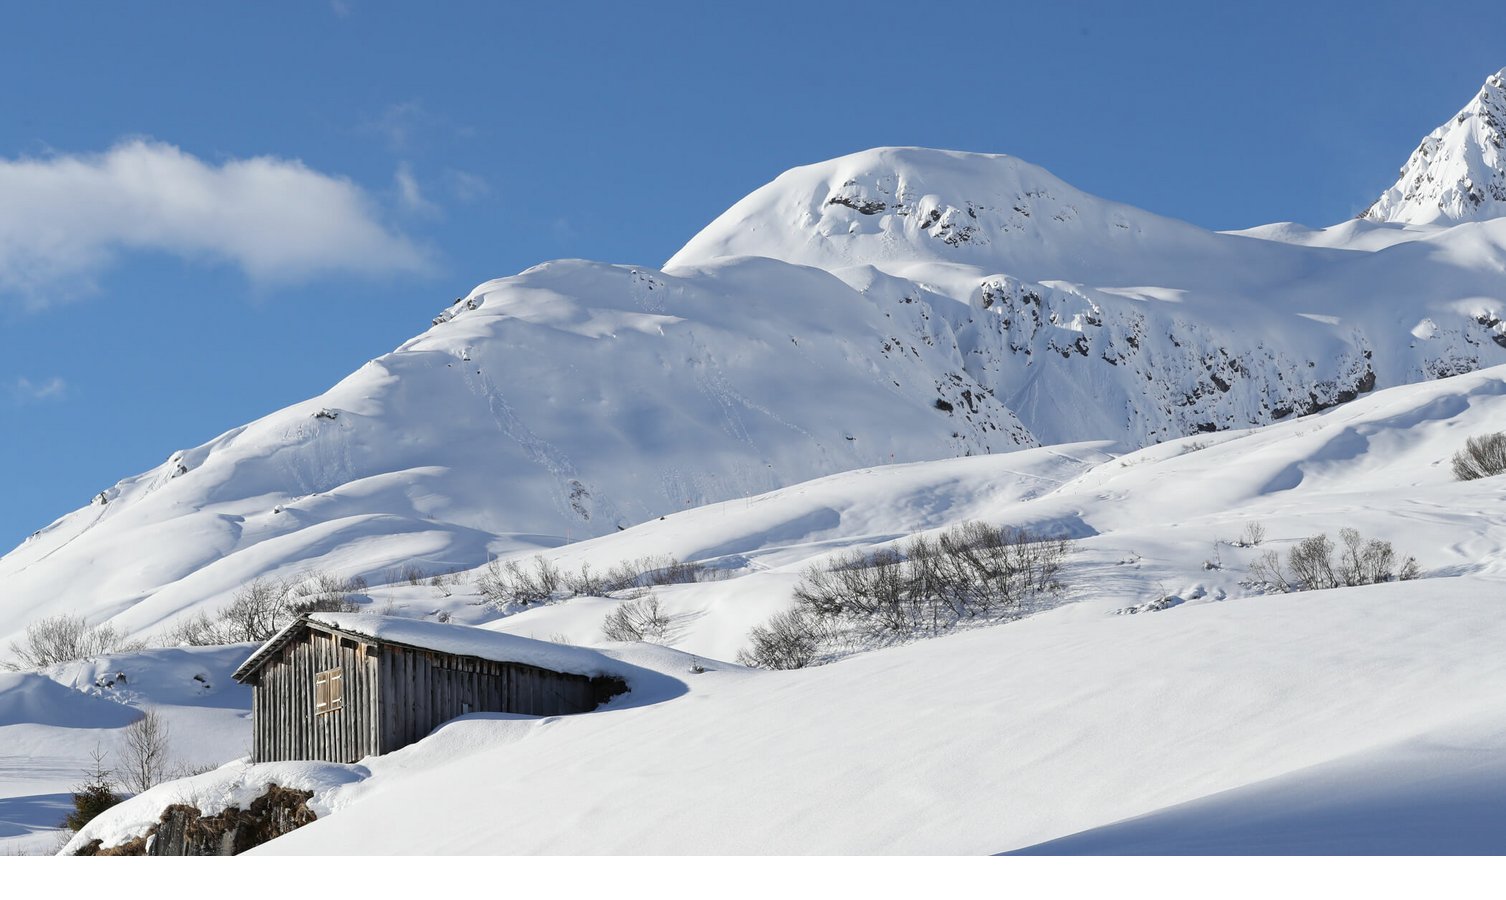 Abgelegene Almhütte am verschneite Berghänge im Skigebiet Lech am Arlberg